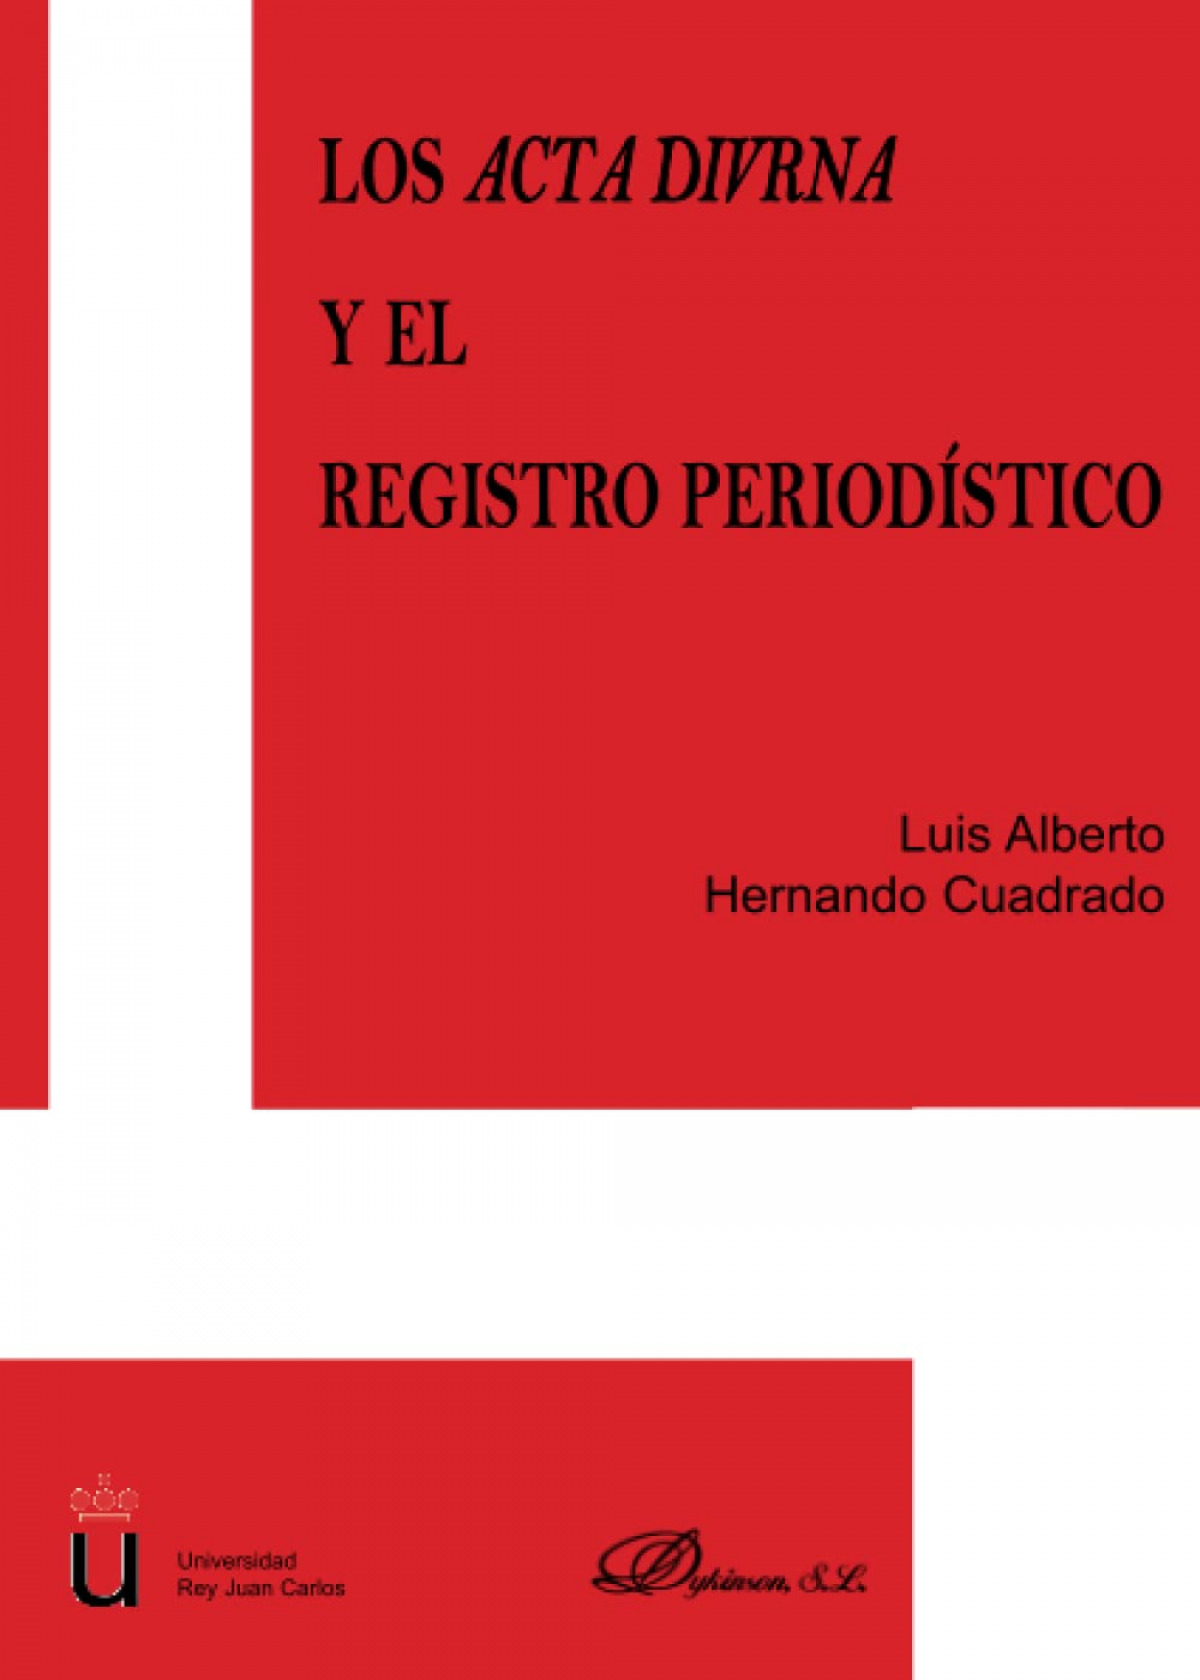 Los acta divrna y el registro periodistico - Hernando Cuadrado, Luis Alberto